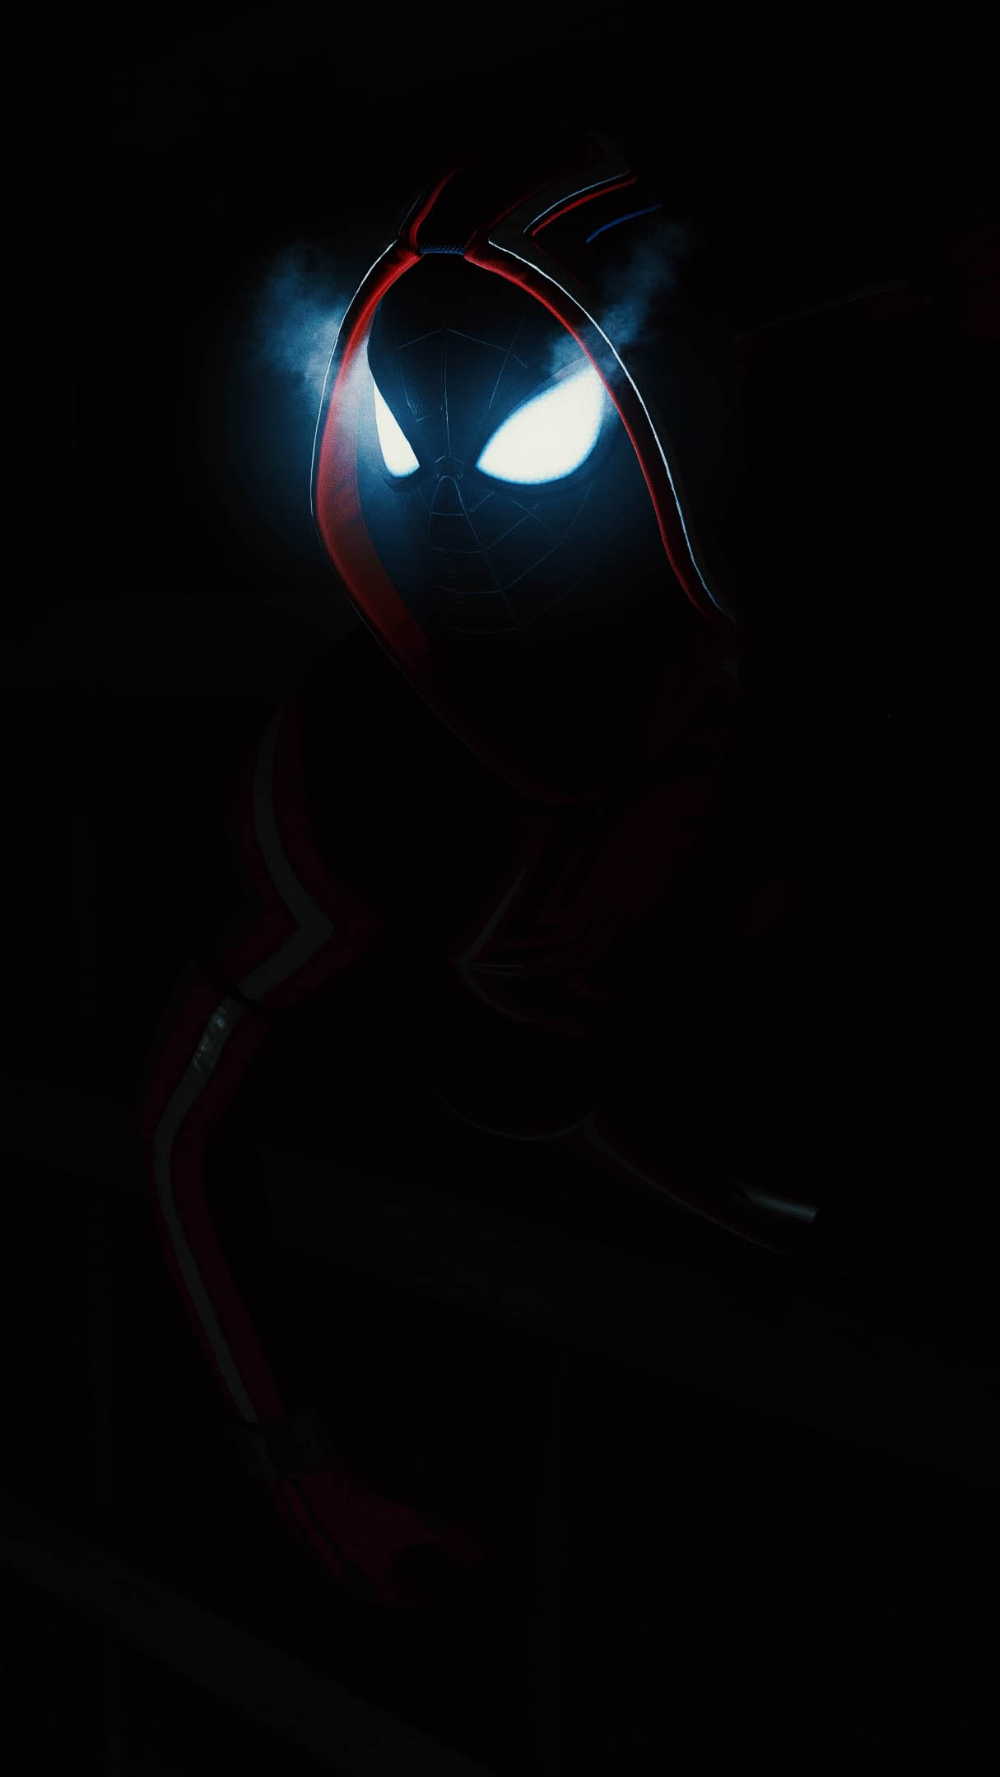 Dark Spiderman Glowing Eyes   IPhone Wallpapers iPhone